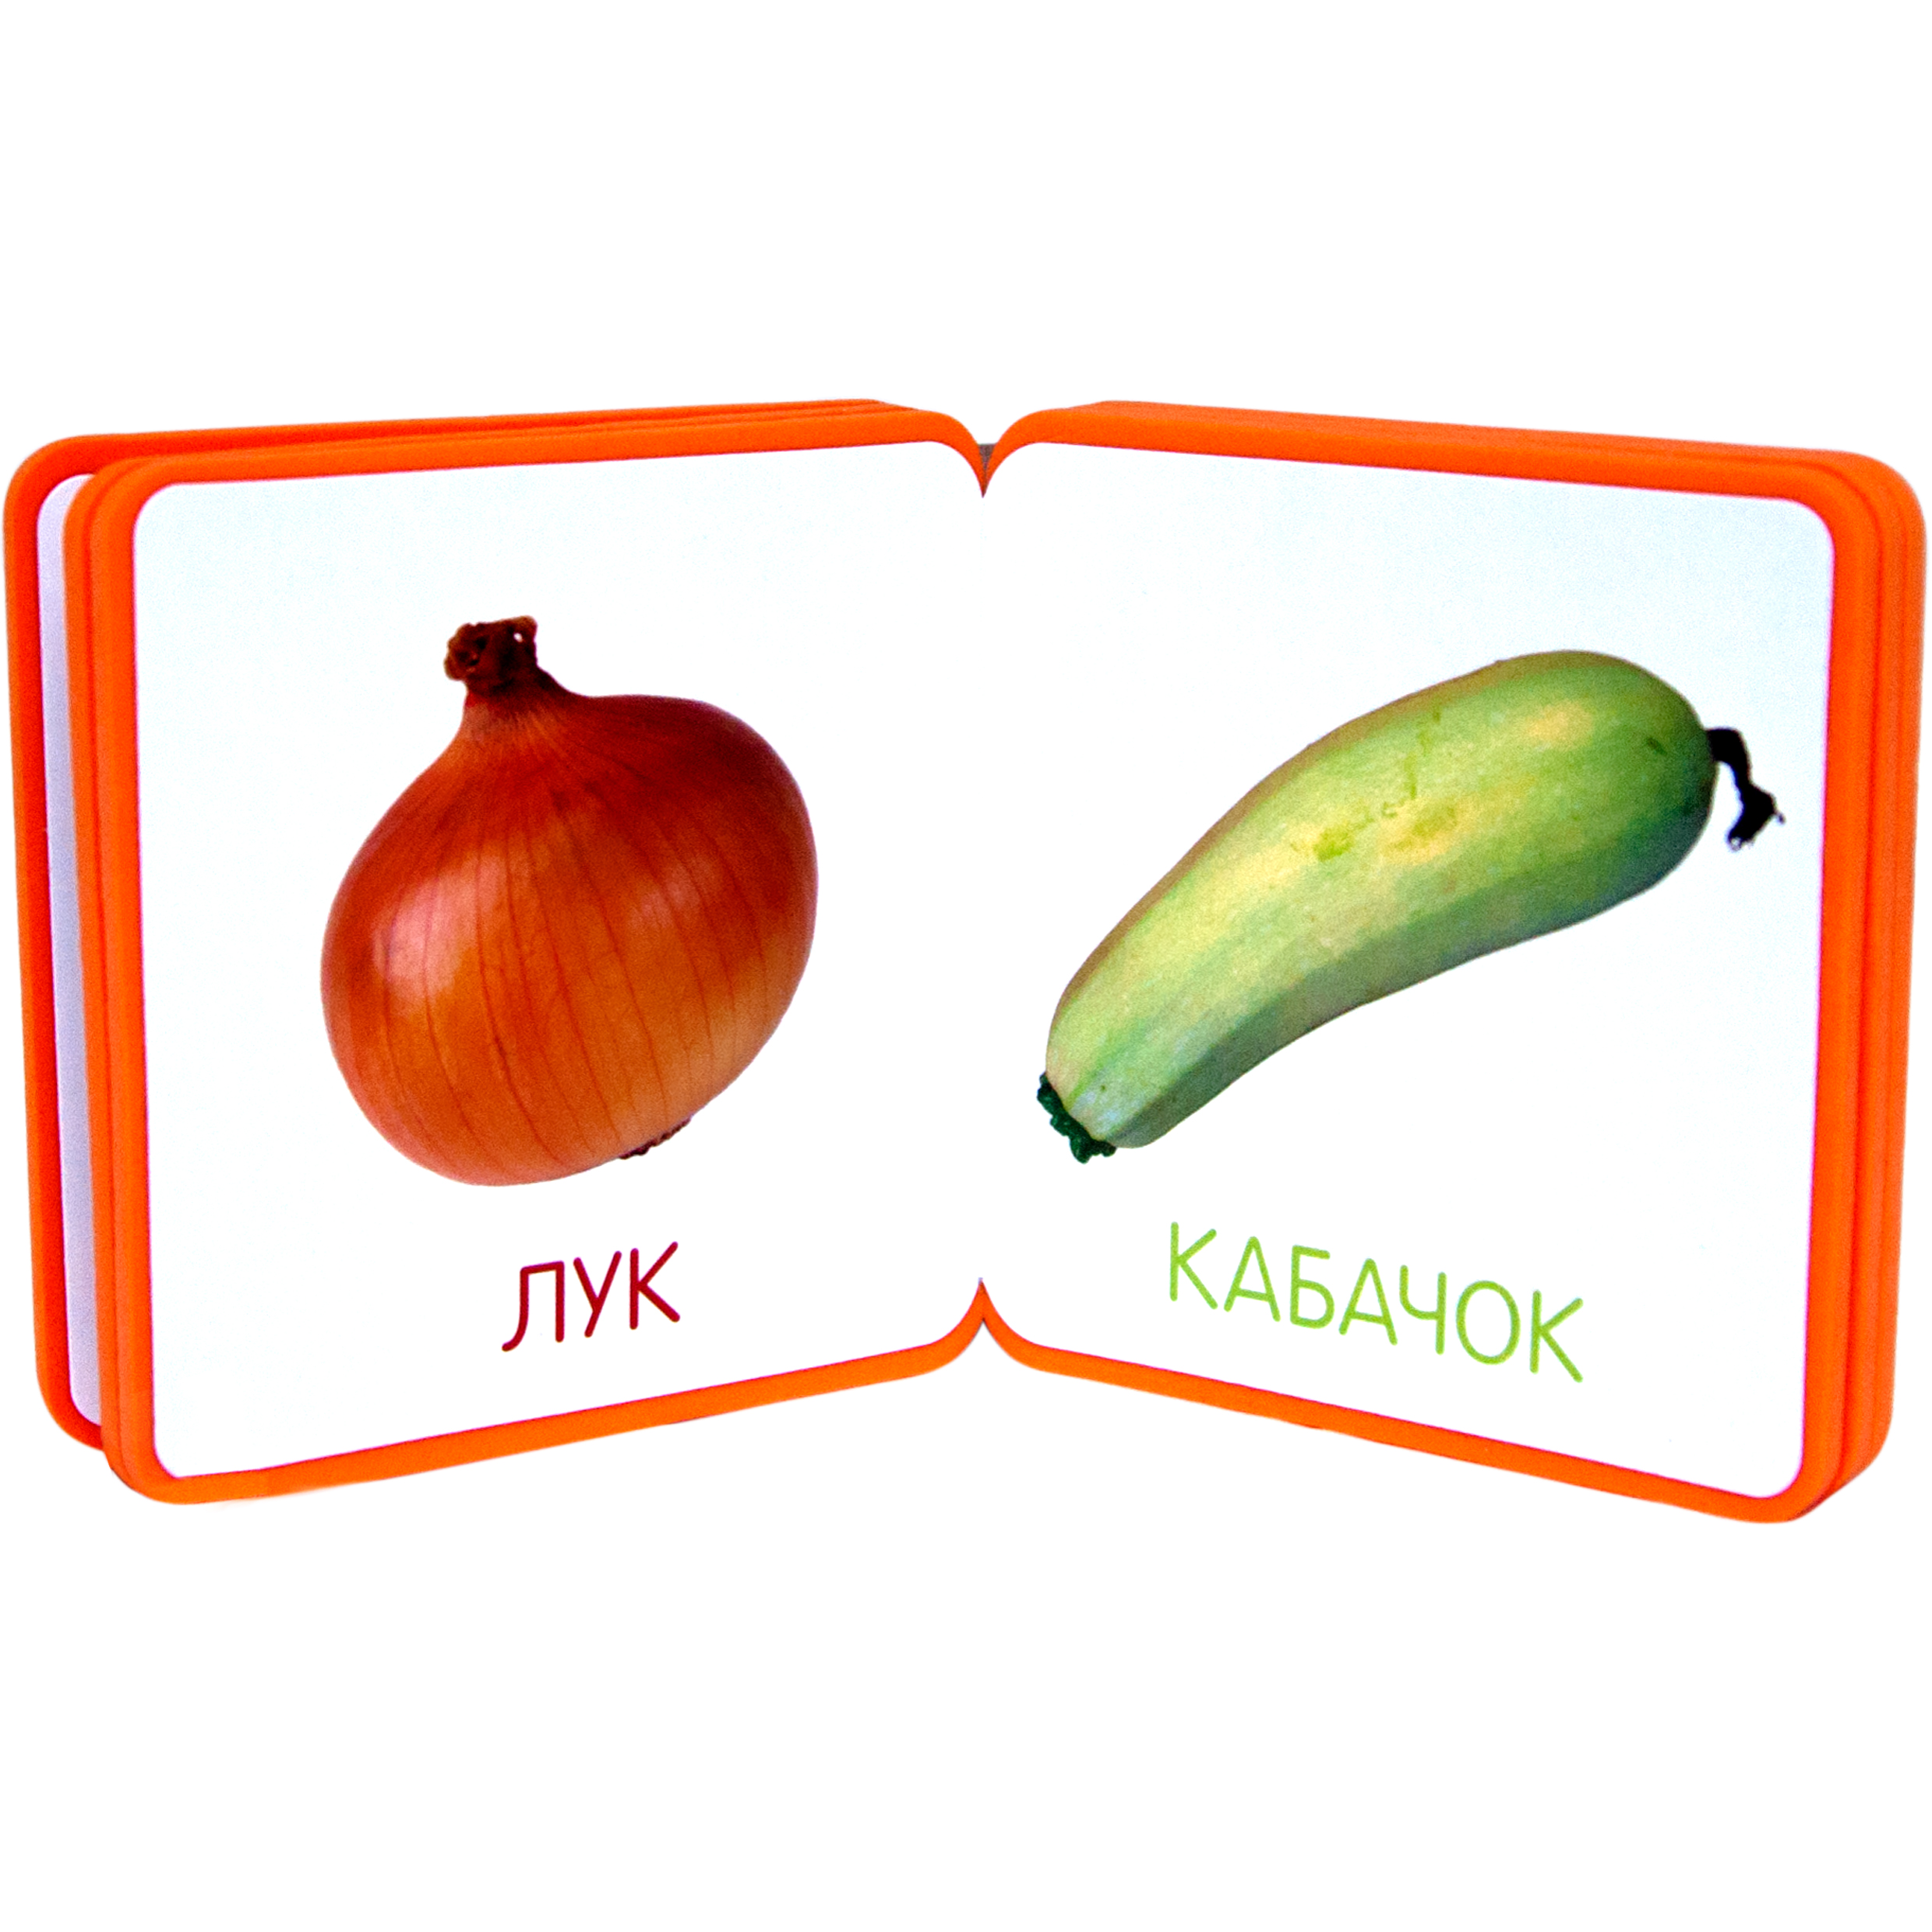 Словарные овощи. Книжка "мой первый словарик" - овощи мозаика-Синтез. Словарик овощей. Мой первый словарик. Книга мой первый словарик.